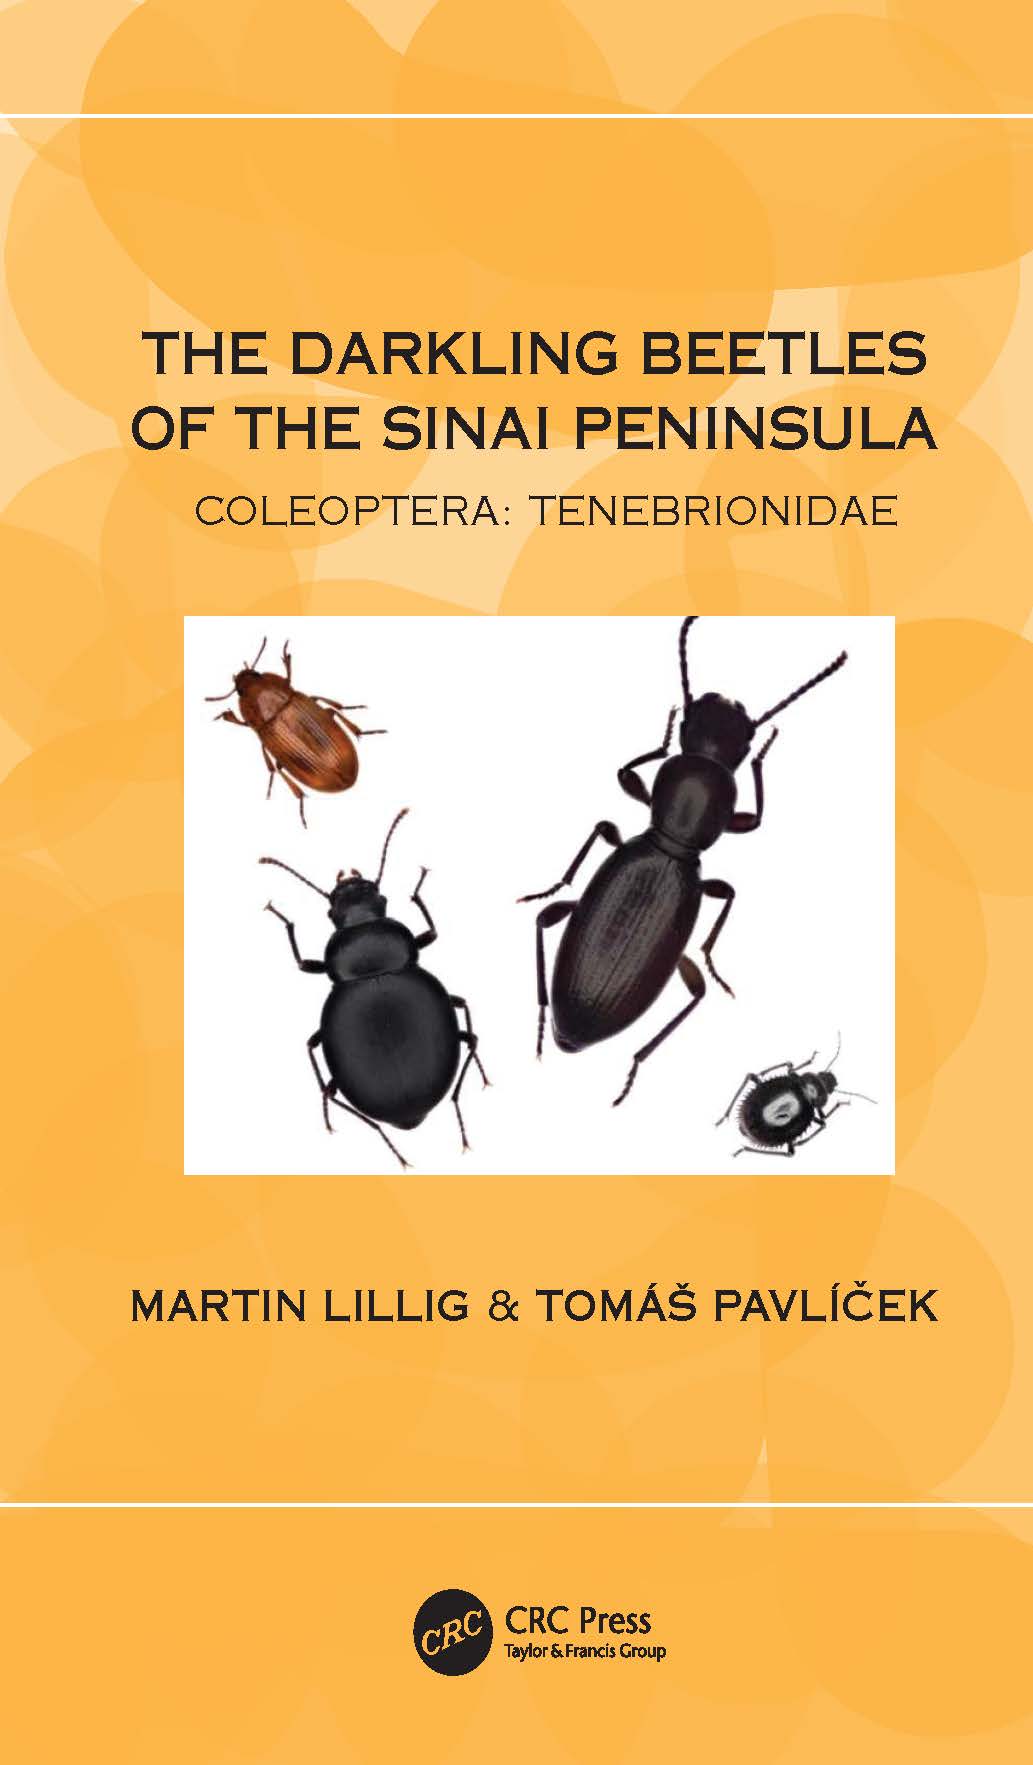 The Darkling Beetles of the Sinai Peninsula – Coleoptera Tenebrionidae